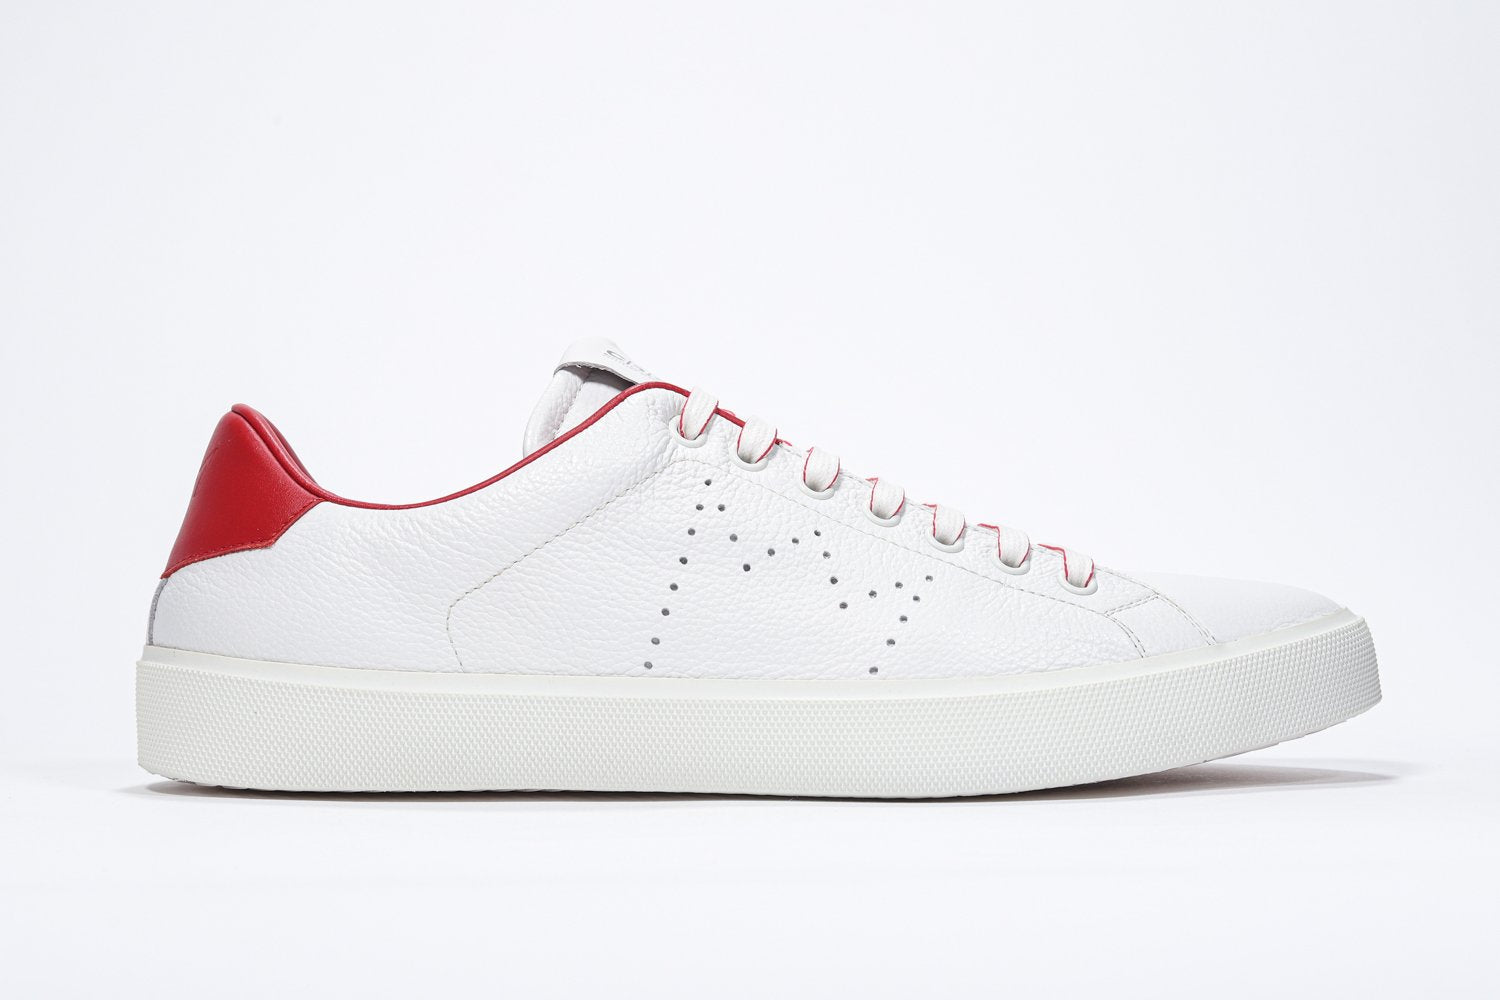 Profil latéral de la chaussure blanche sneaker avec des détails rouges et le logo perforé de la couronne sur l'empeigne. Tige en cuir et semelle en caoutchouc blanc.